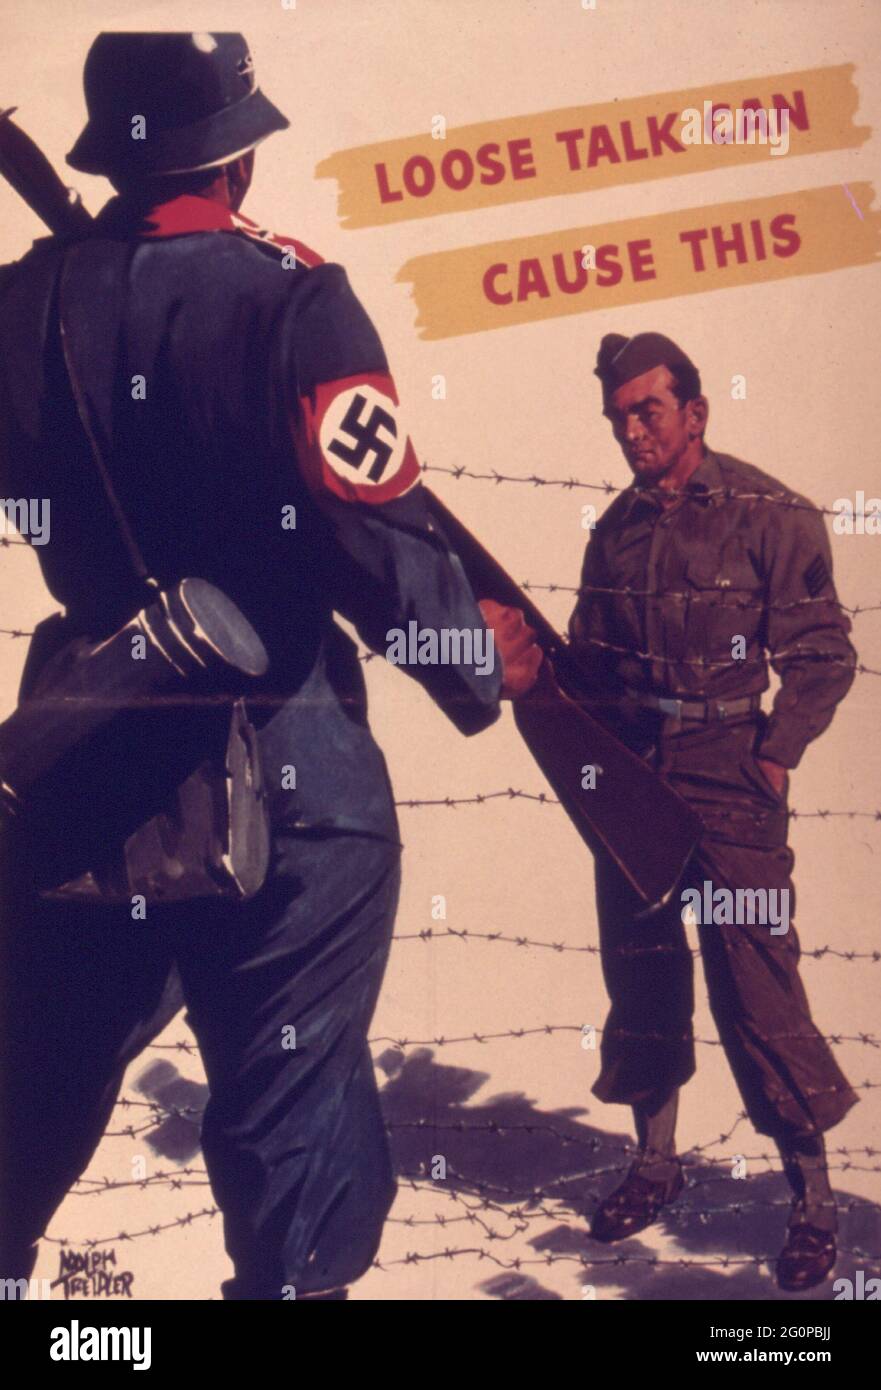 Un poster vintage degli alleati della seconda guerra mondiale che aumenta la consapevolezza di parlare senza cura costa la vita, mostrando un soldato alleato dietro filo spinato Foto Stock